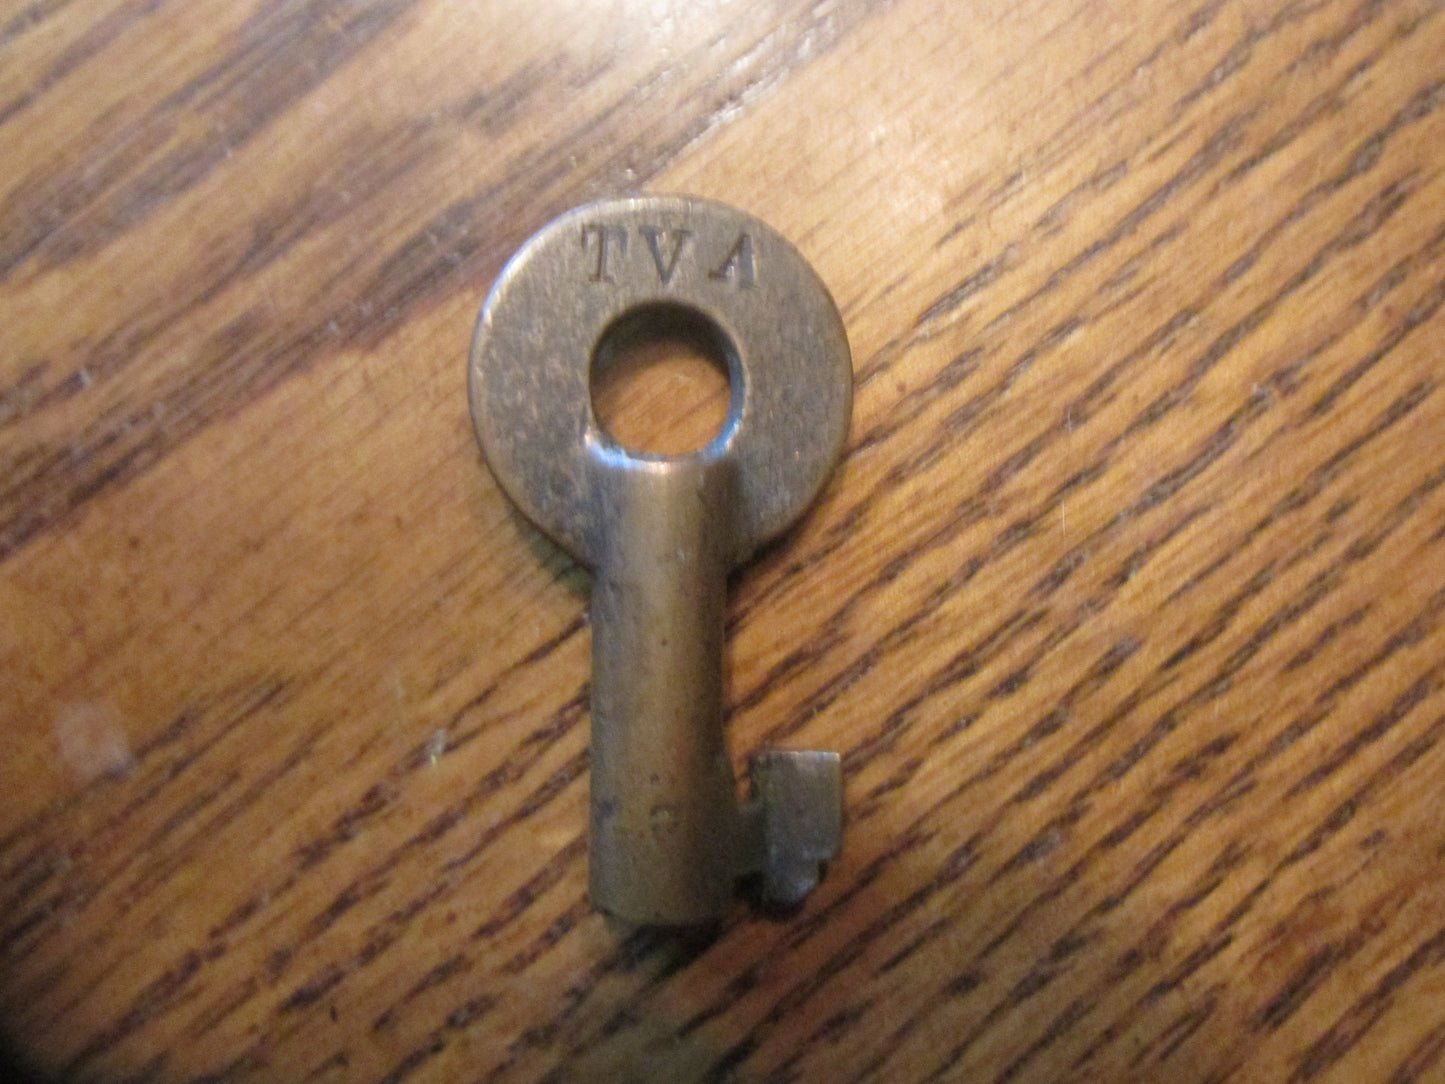 TVA Key